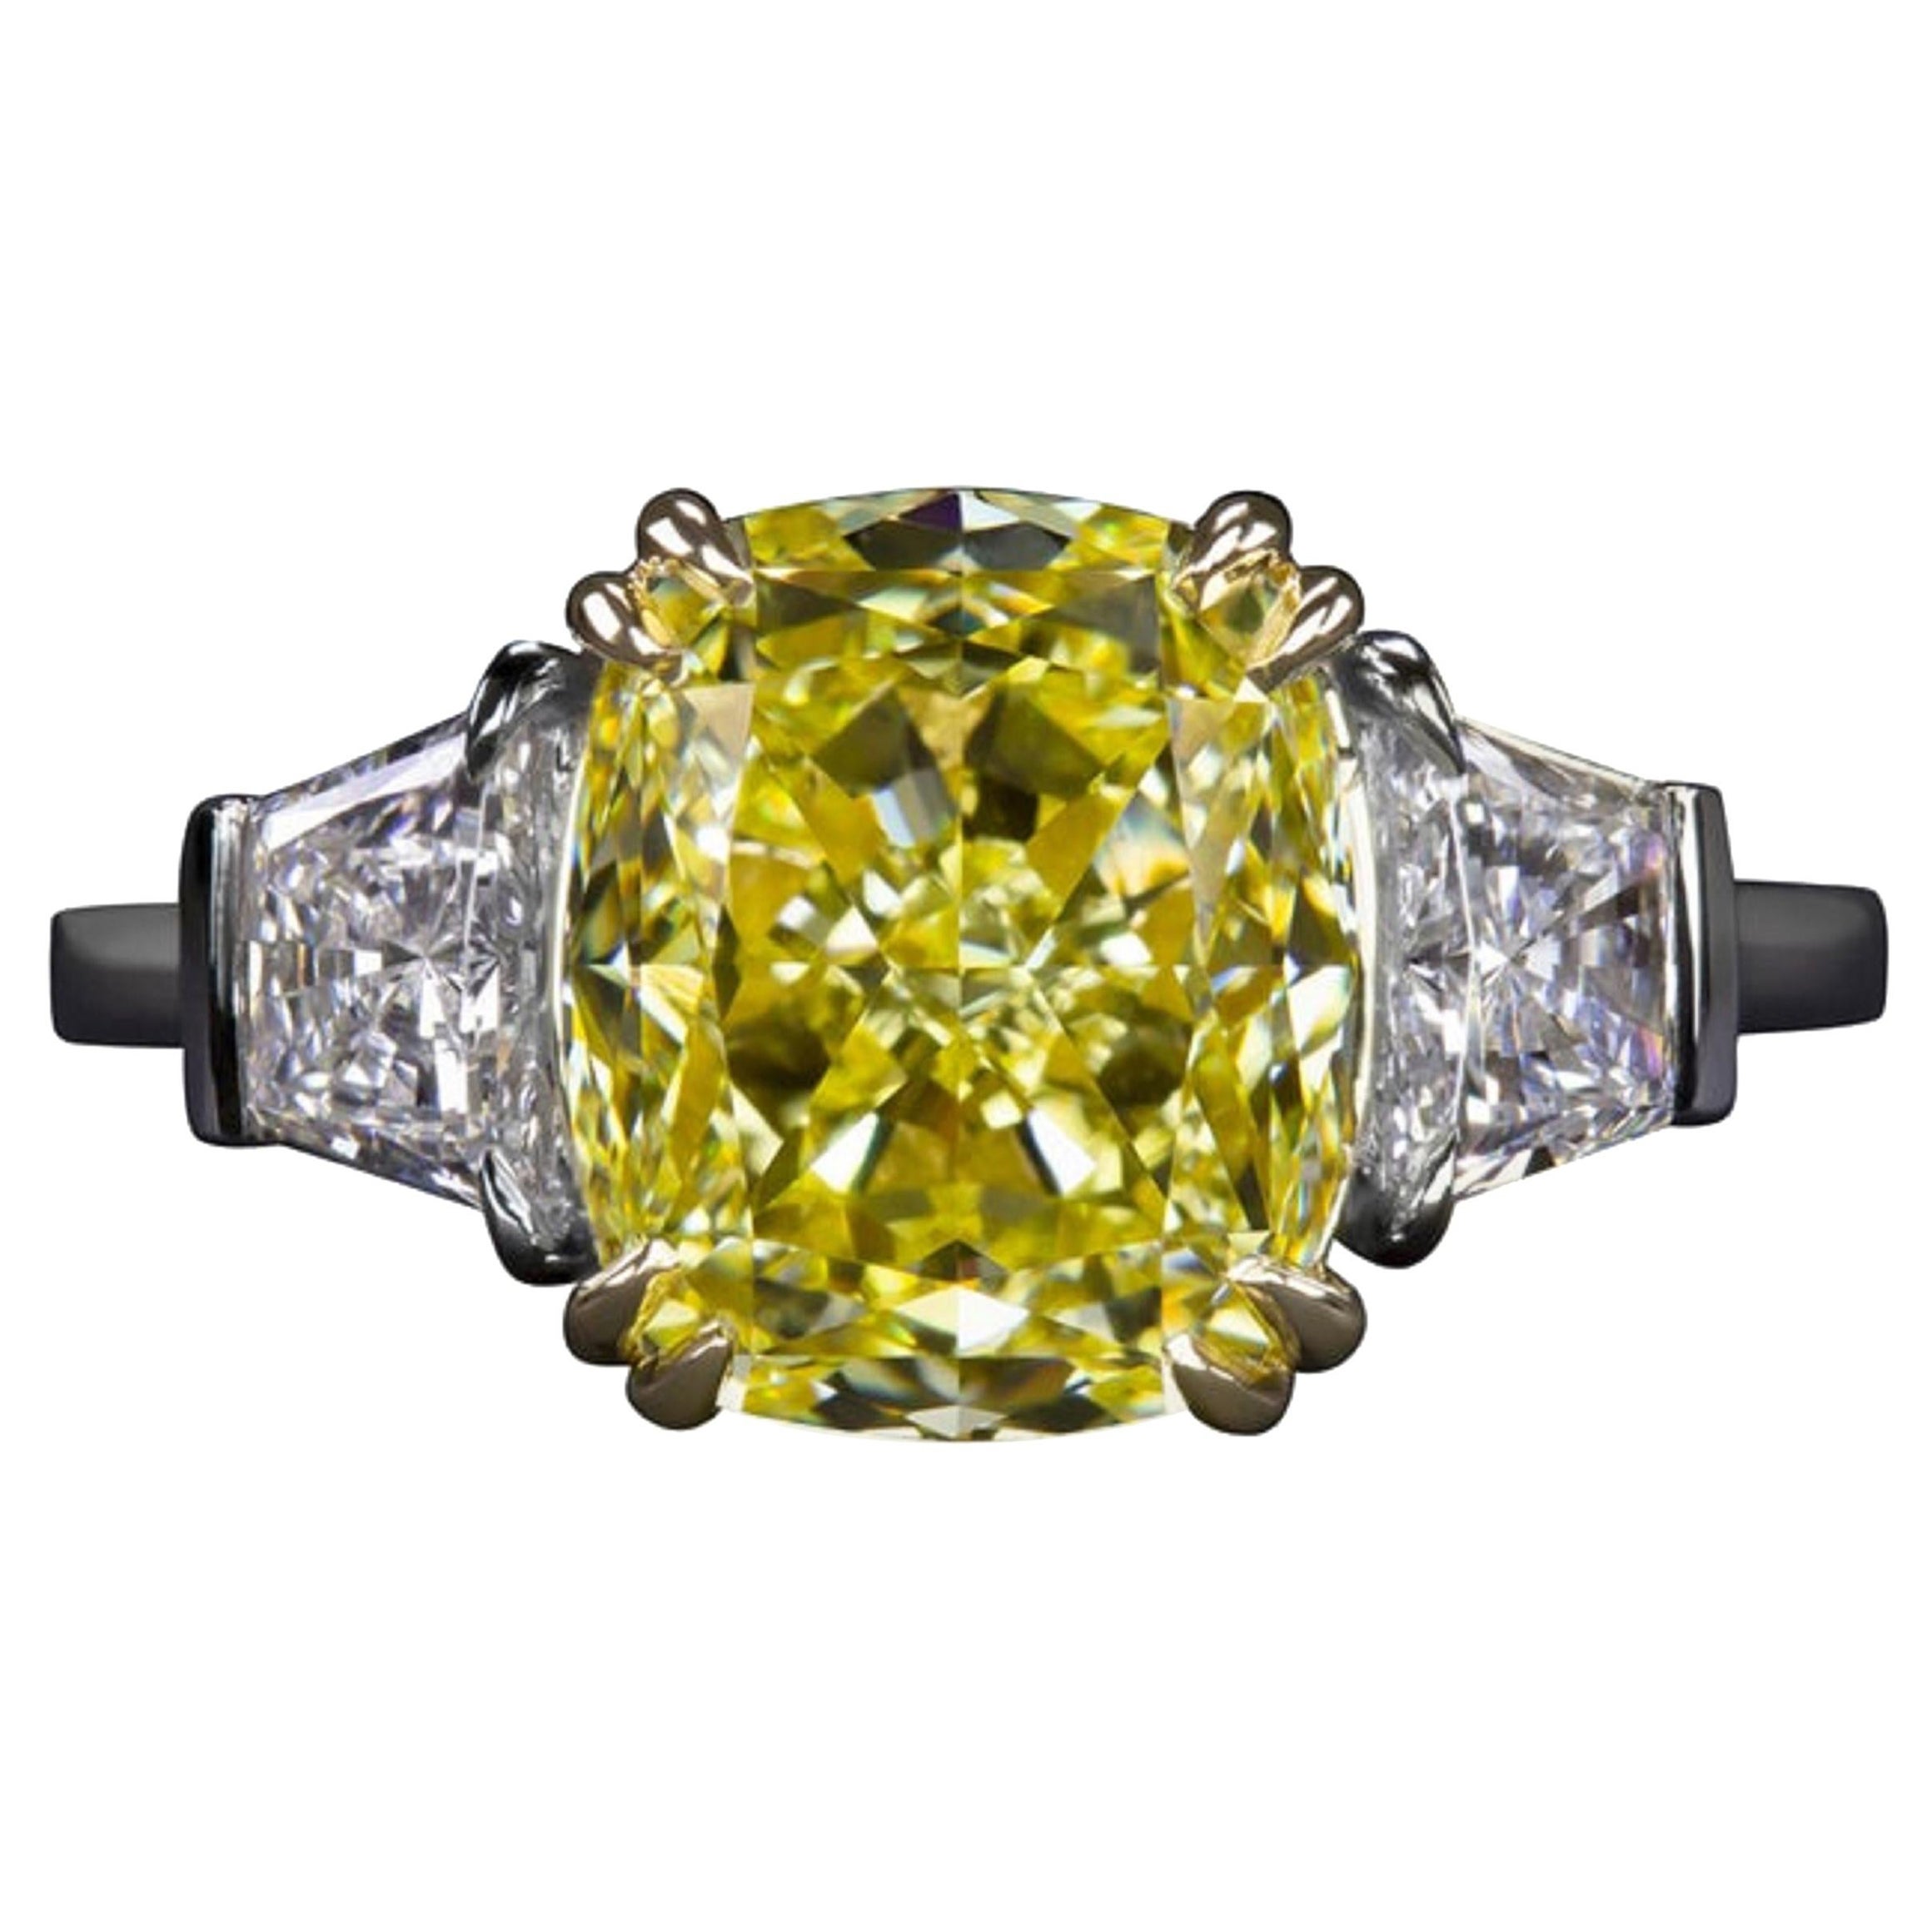 GIA Certified 5 Carat Fancy Light Yellow Cushion Diamond Ring